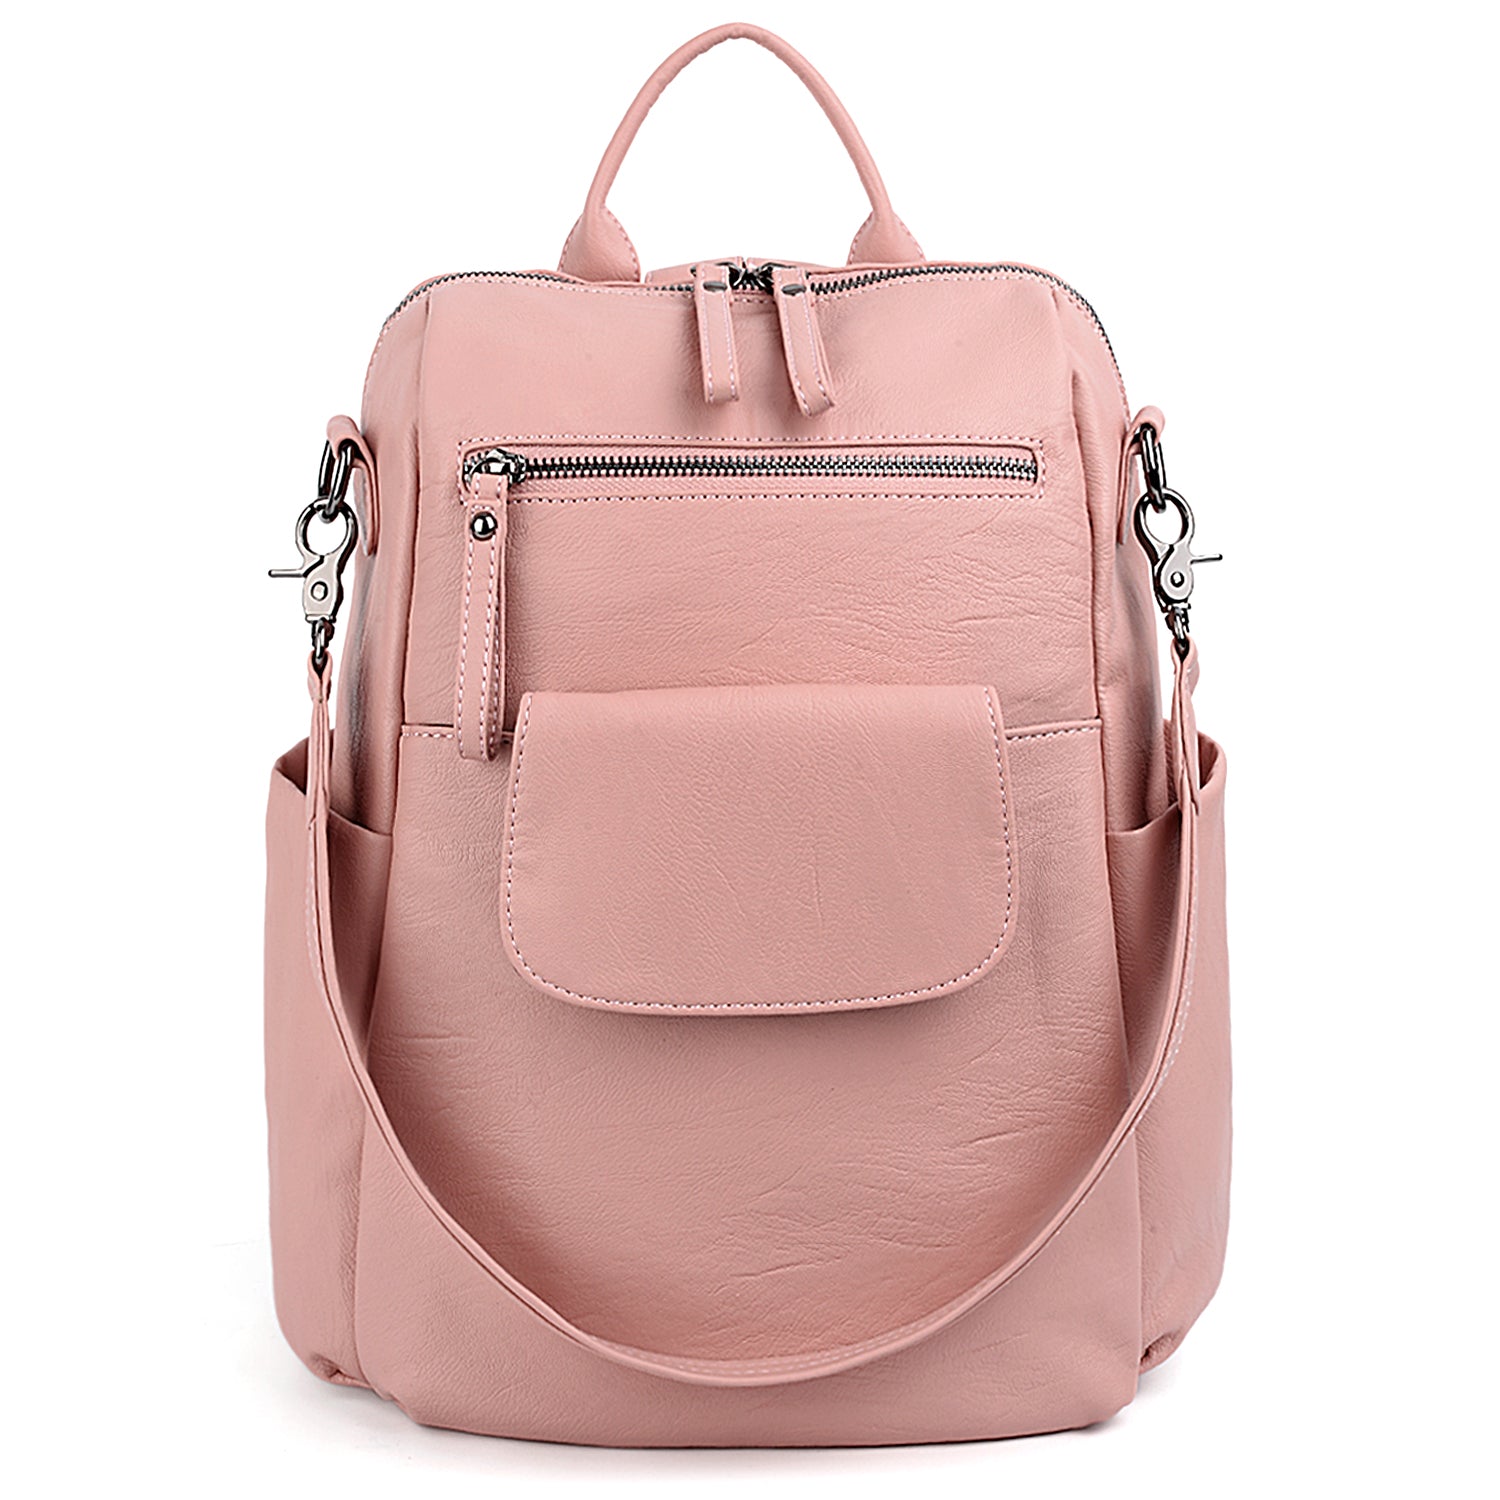 Chiara Ferragni Eyelike Star Faux-leather Backpack in Pink | Lyst